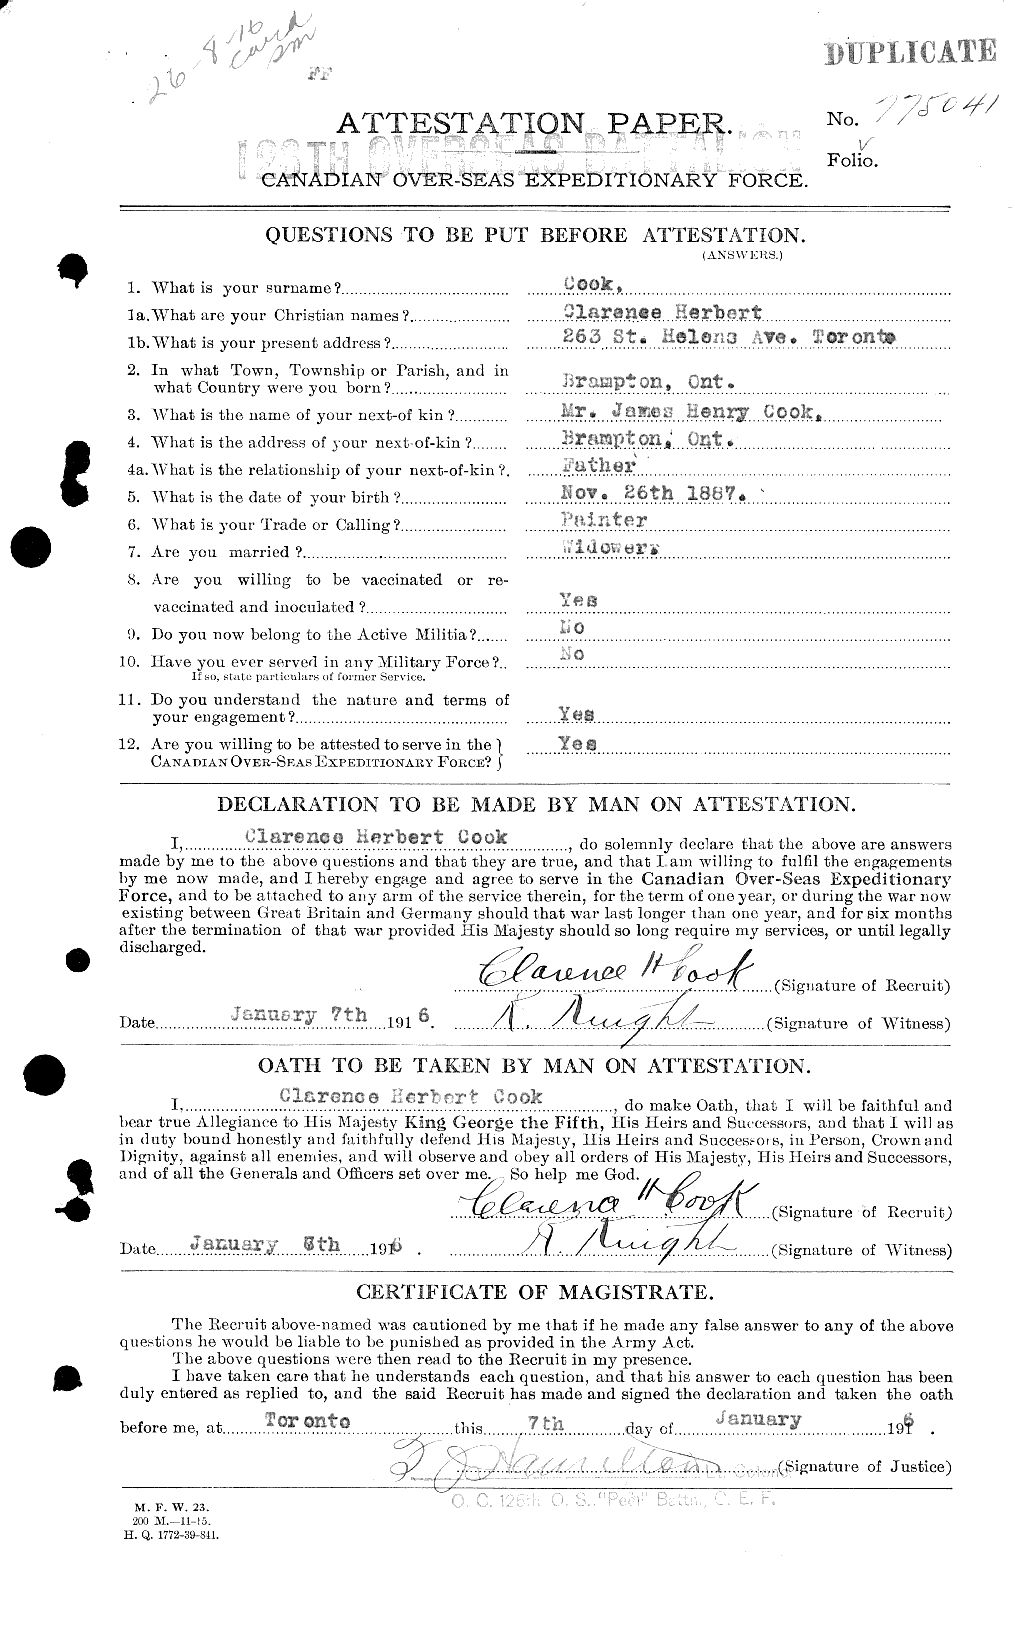 Dossiers du Personnel de la Première Guerre mondiale - CEC 038716a